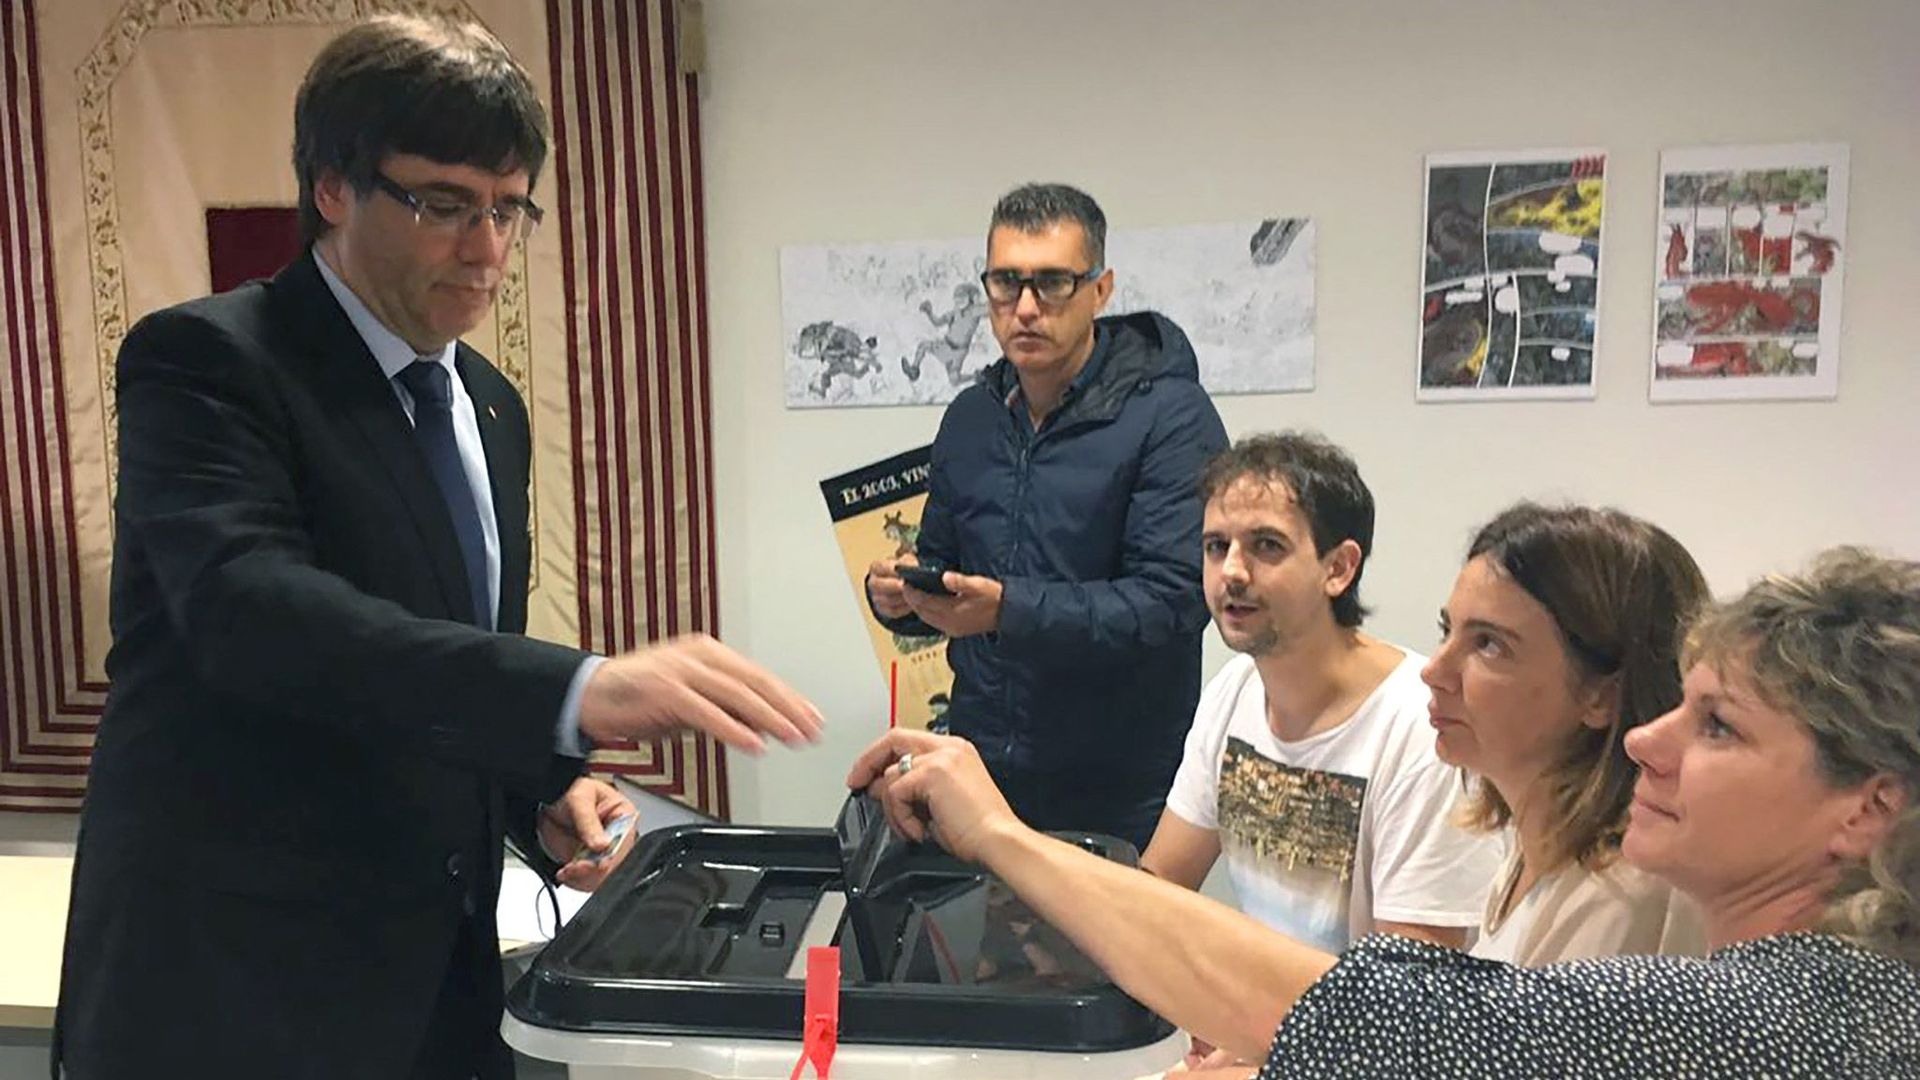 Cette photo a été distribuée le 1er octobre 2017 par les autorités catalanes. Elle montre Carles Puigdemont glisser son bulletin dans une urne lors du référendum dont la légalité a été contestée par les autorités espagnoles.